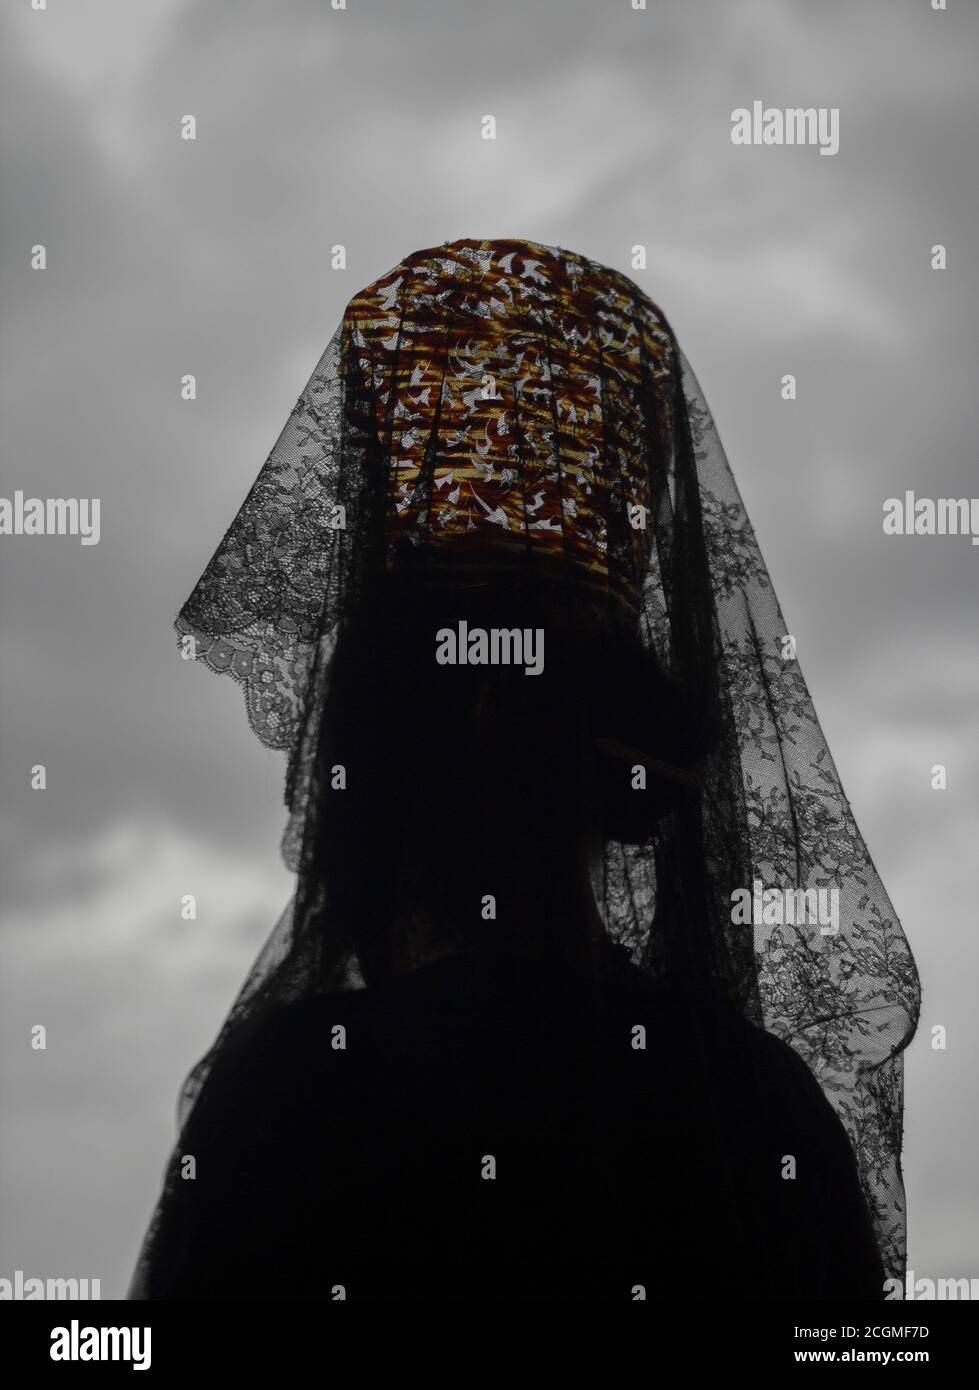 Woman wearing a headdress of black lace Stock Photo